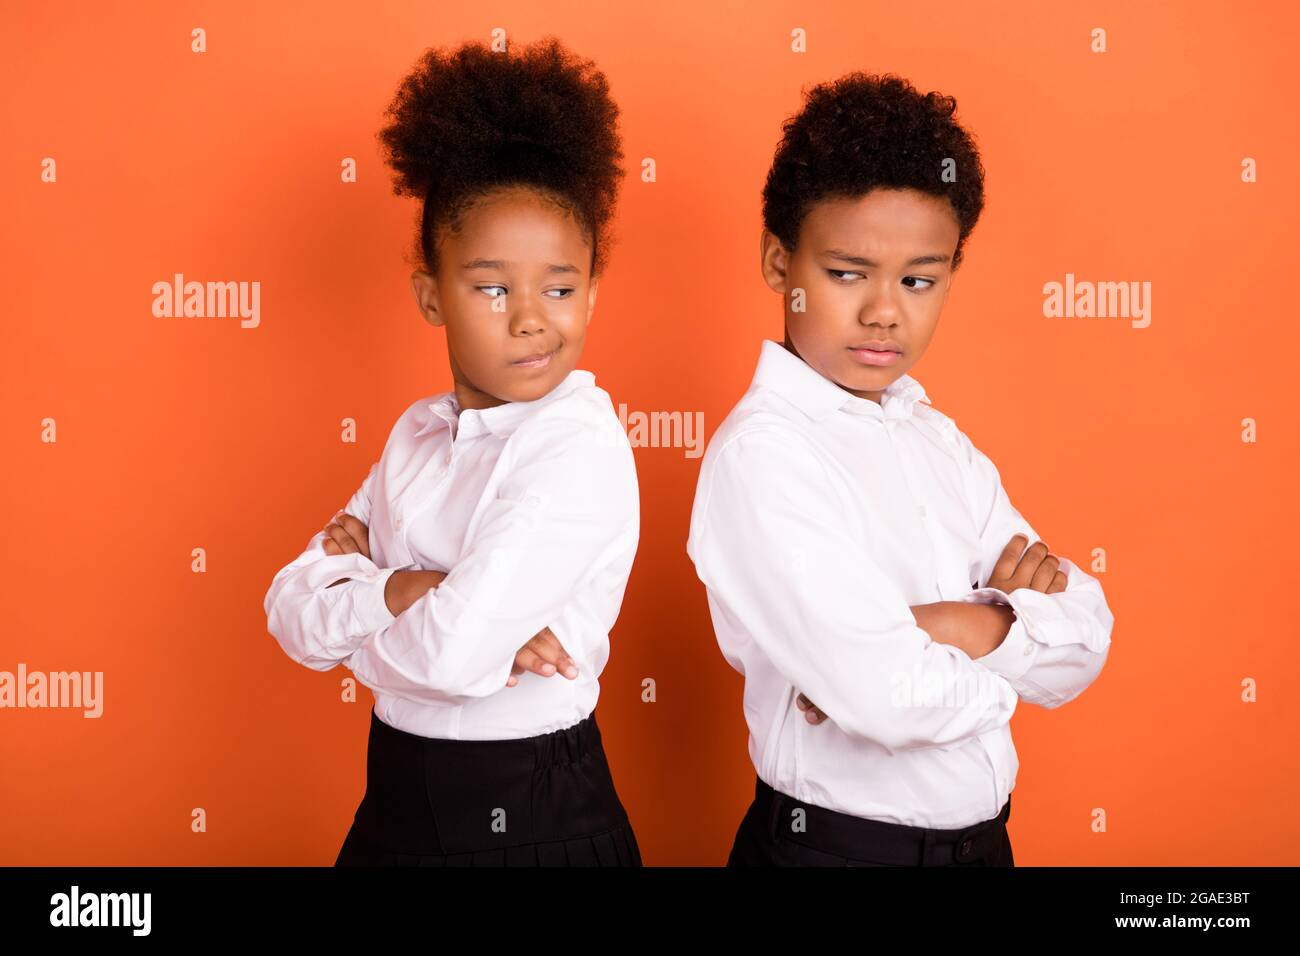 Profil Seitenfoto von zwei jungen schwarzen Kindern gefalteten Händen unglücklich beleidigt Konflikt isoliert über orange Farbe Hintergrund Stockfoto